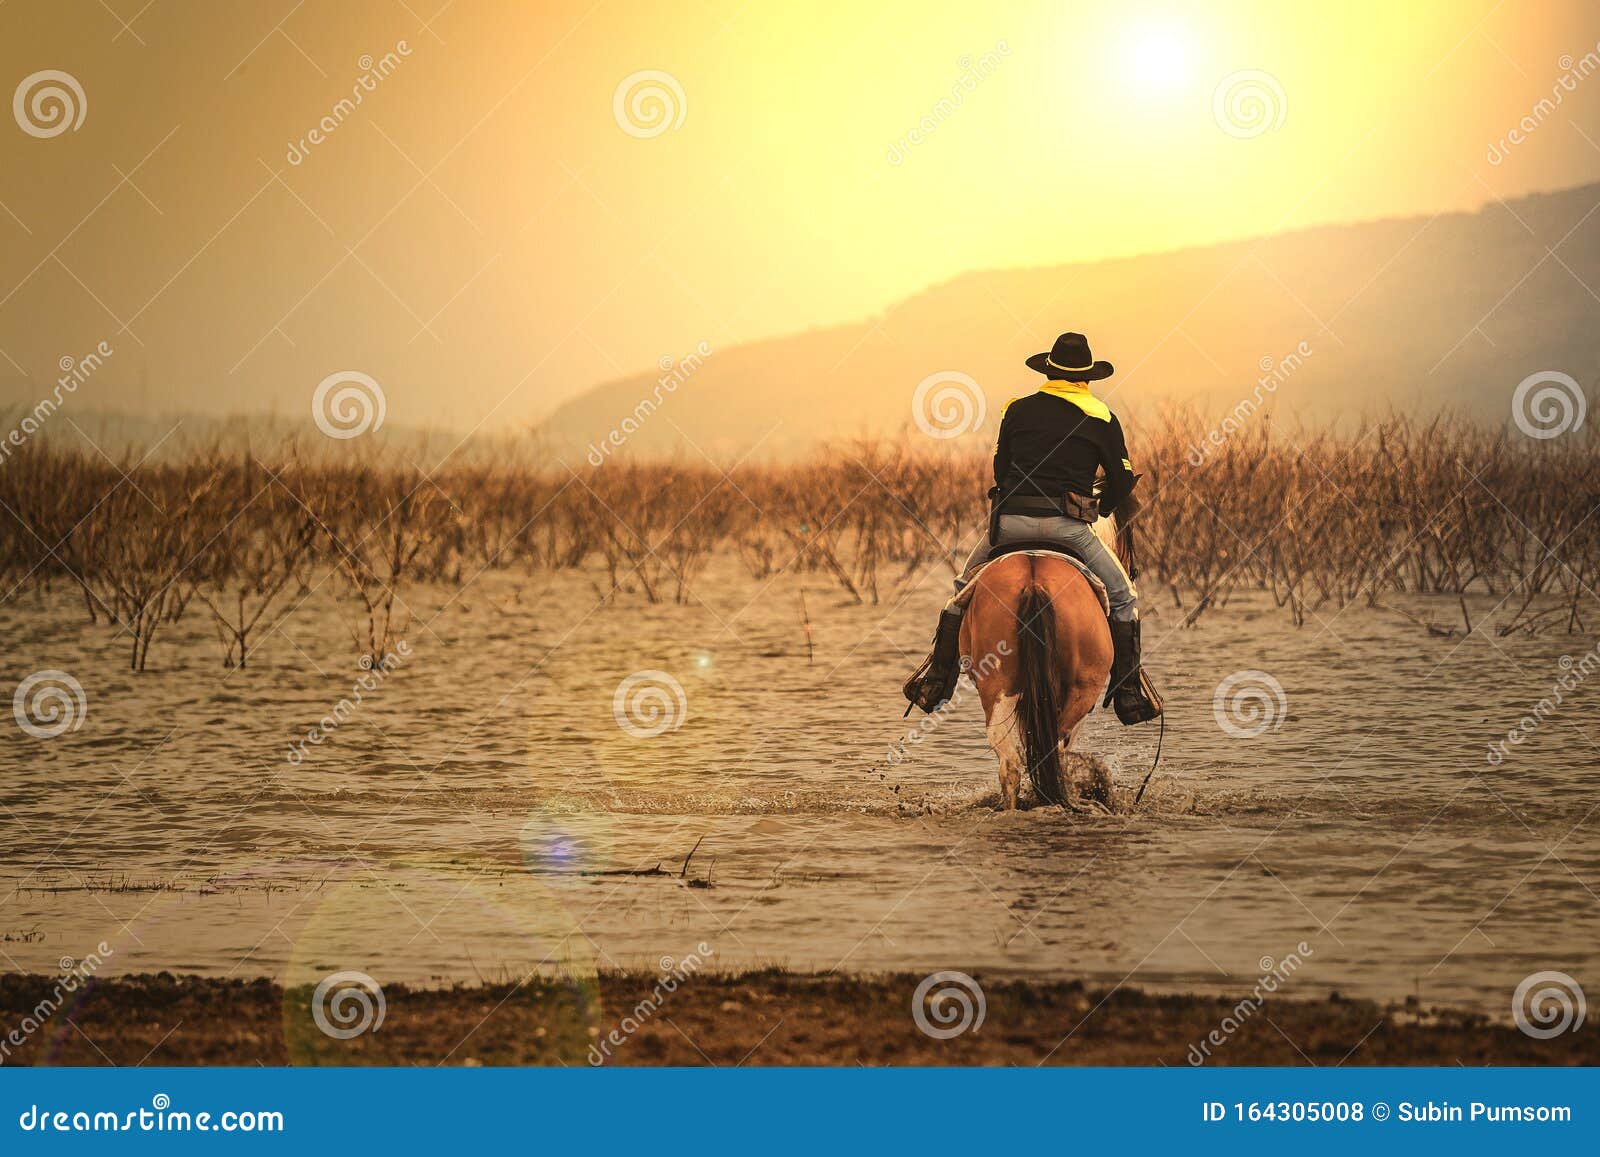 Een Man in Cowboy Kostuum Op Zijn Paard in Een Hoek Tegen De Zon Tegen Een Rivieren En Bergen Foto - Image of rivieren, hoek: 164305008